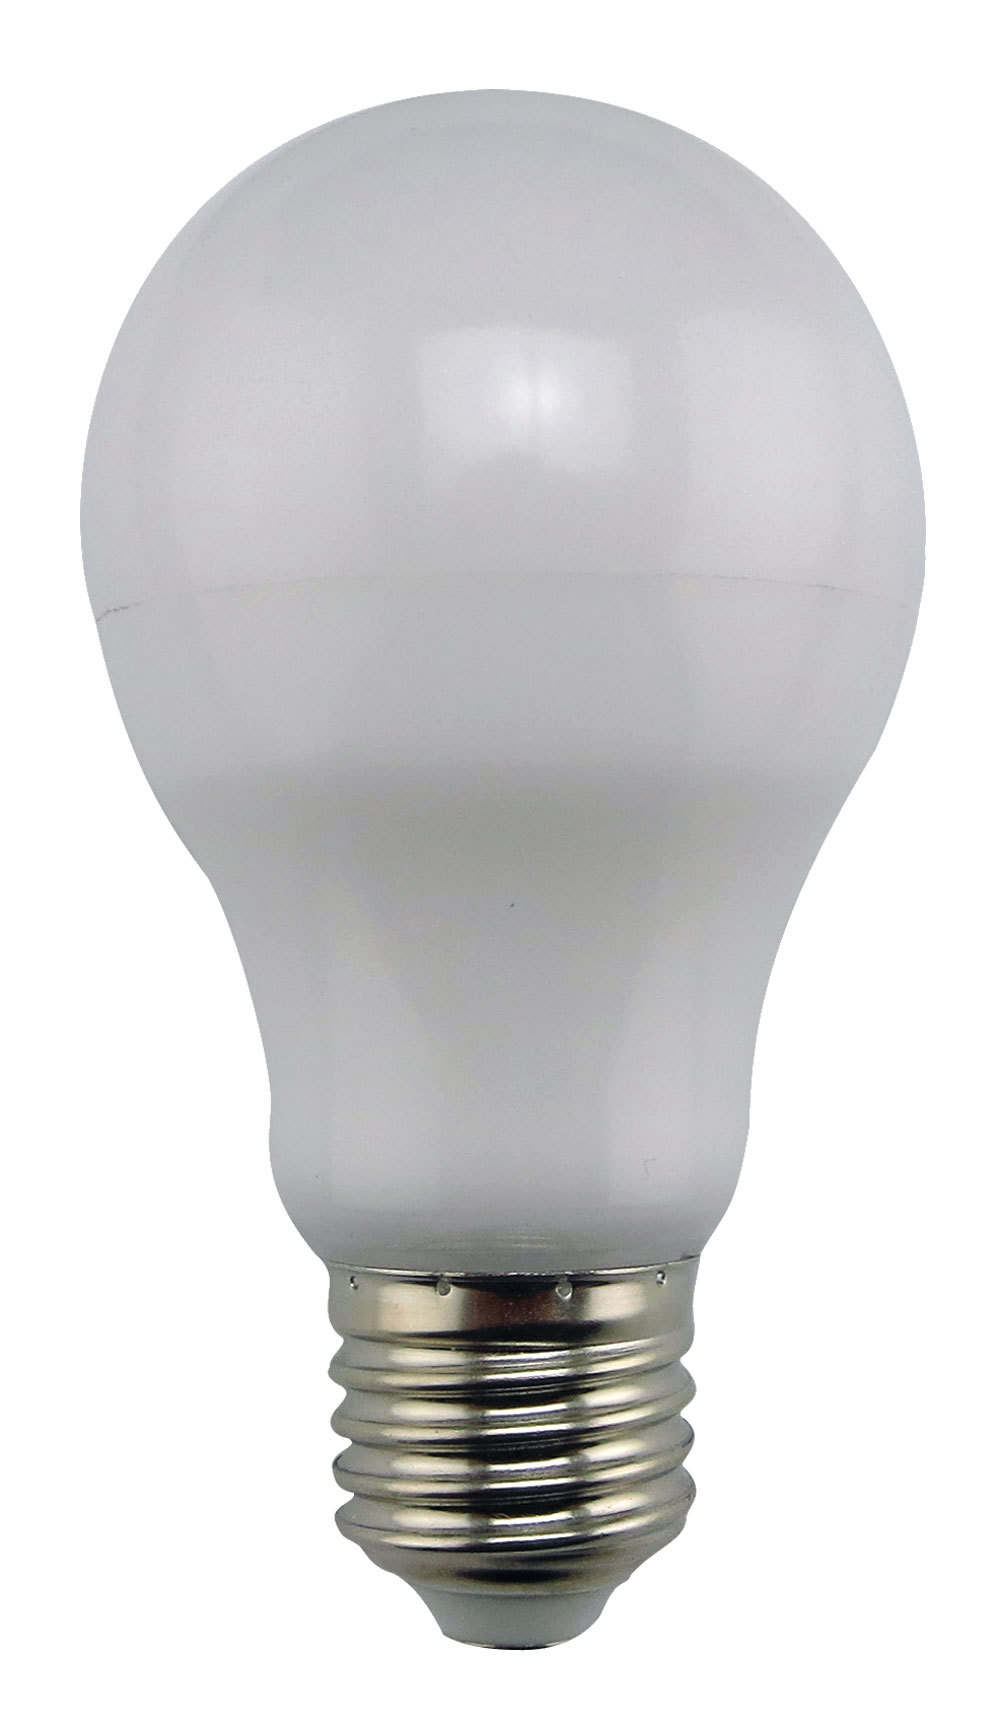 90121411 Лампа Premium светодионая E27 14 Вт груша 1120 Лм холодный свет STLM-0112535 ECOLA